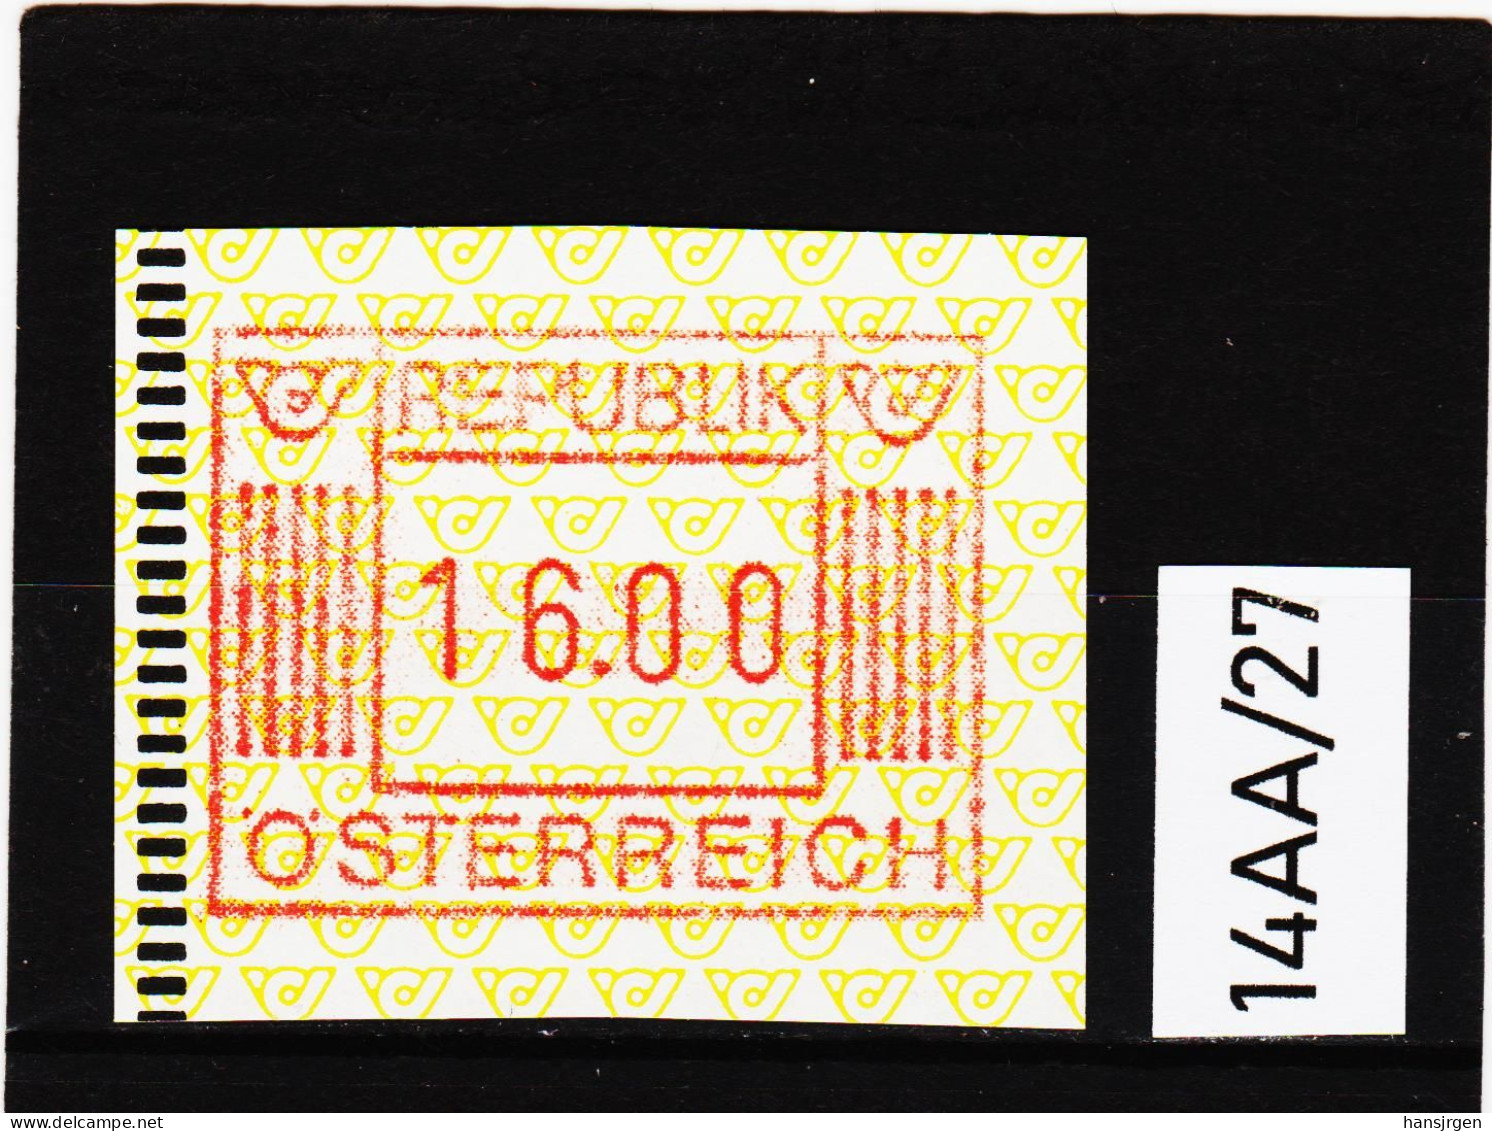 14AA/27  ÖSTERREICH 1983 AUTOMATENMARKEN 1. AUSGABE  16,00 SCHILLING   ** Postfrisch - Automaatzegels [ATM]